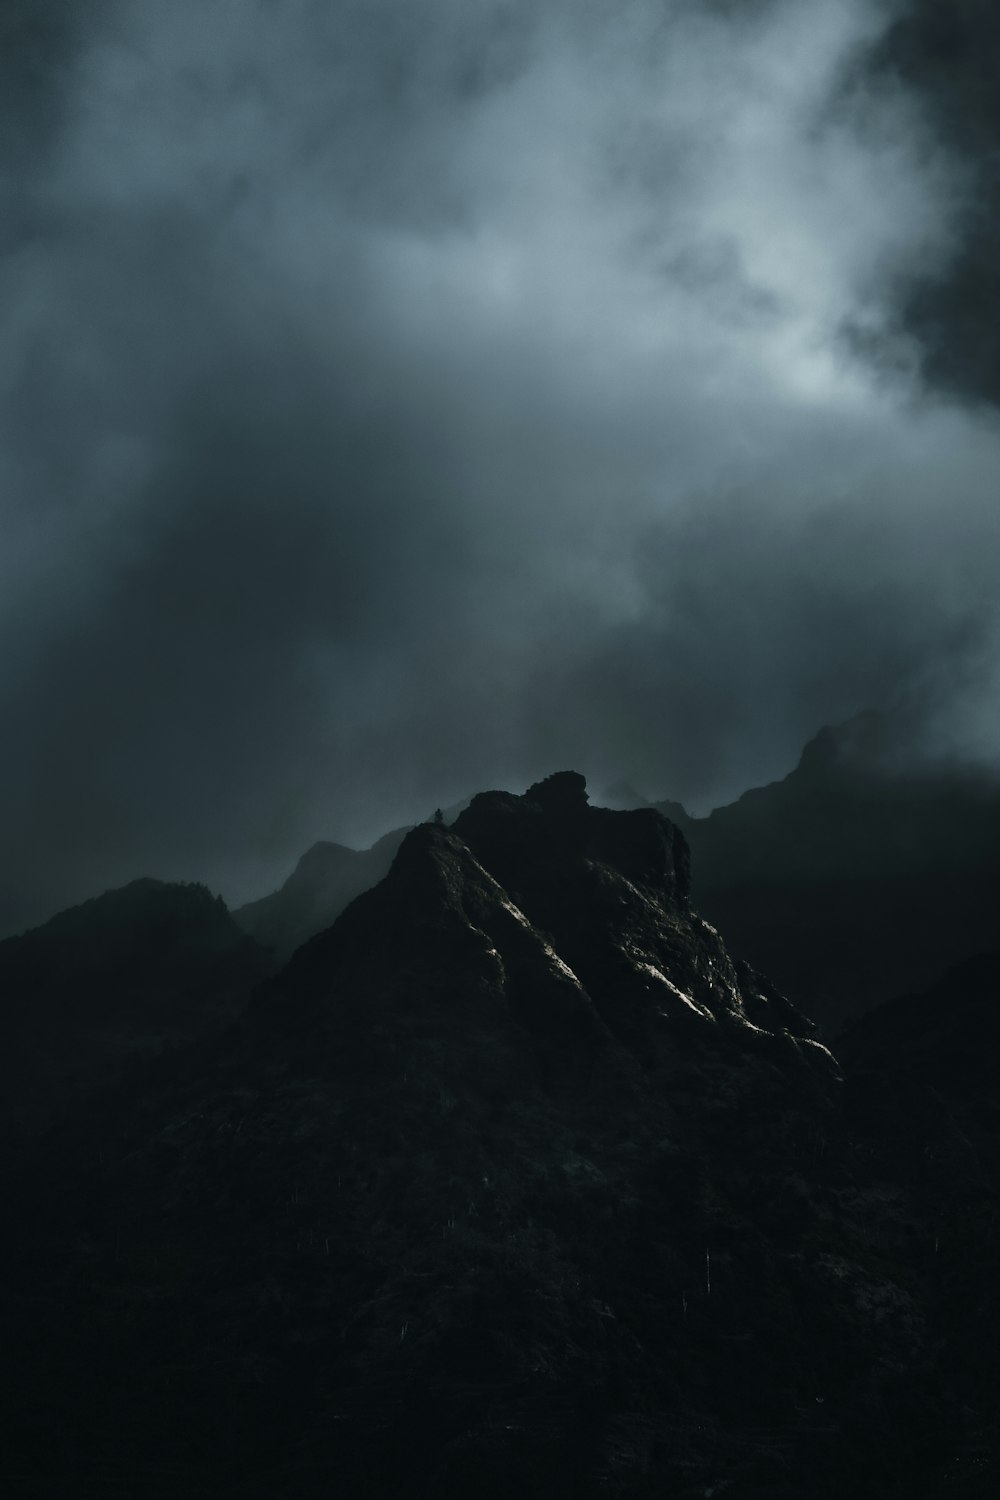 Una foto en blanco y negro de una montaña bajo un cielo nublado